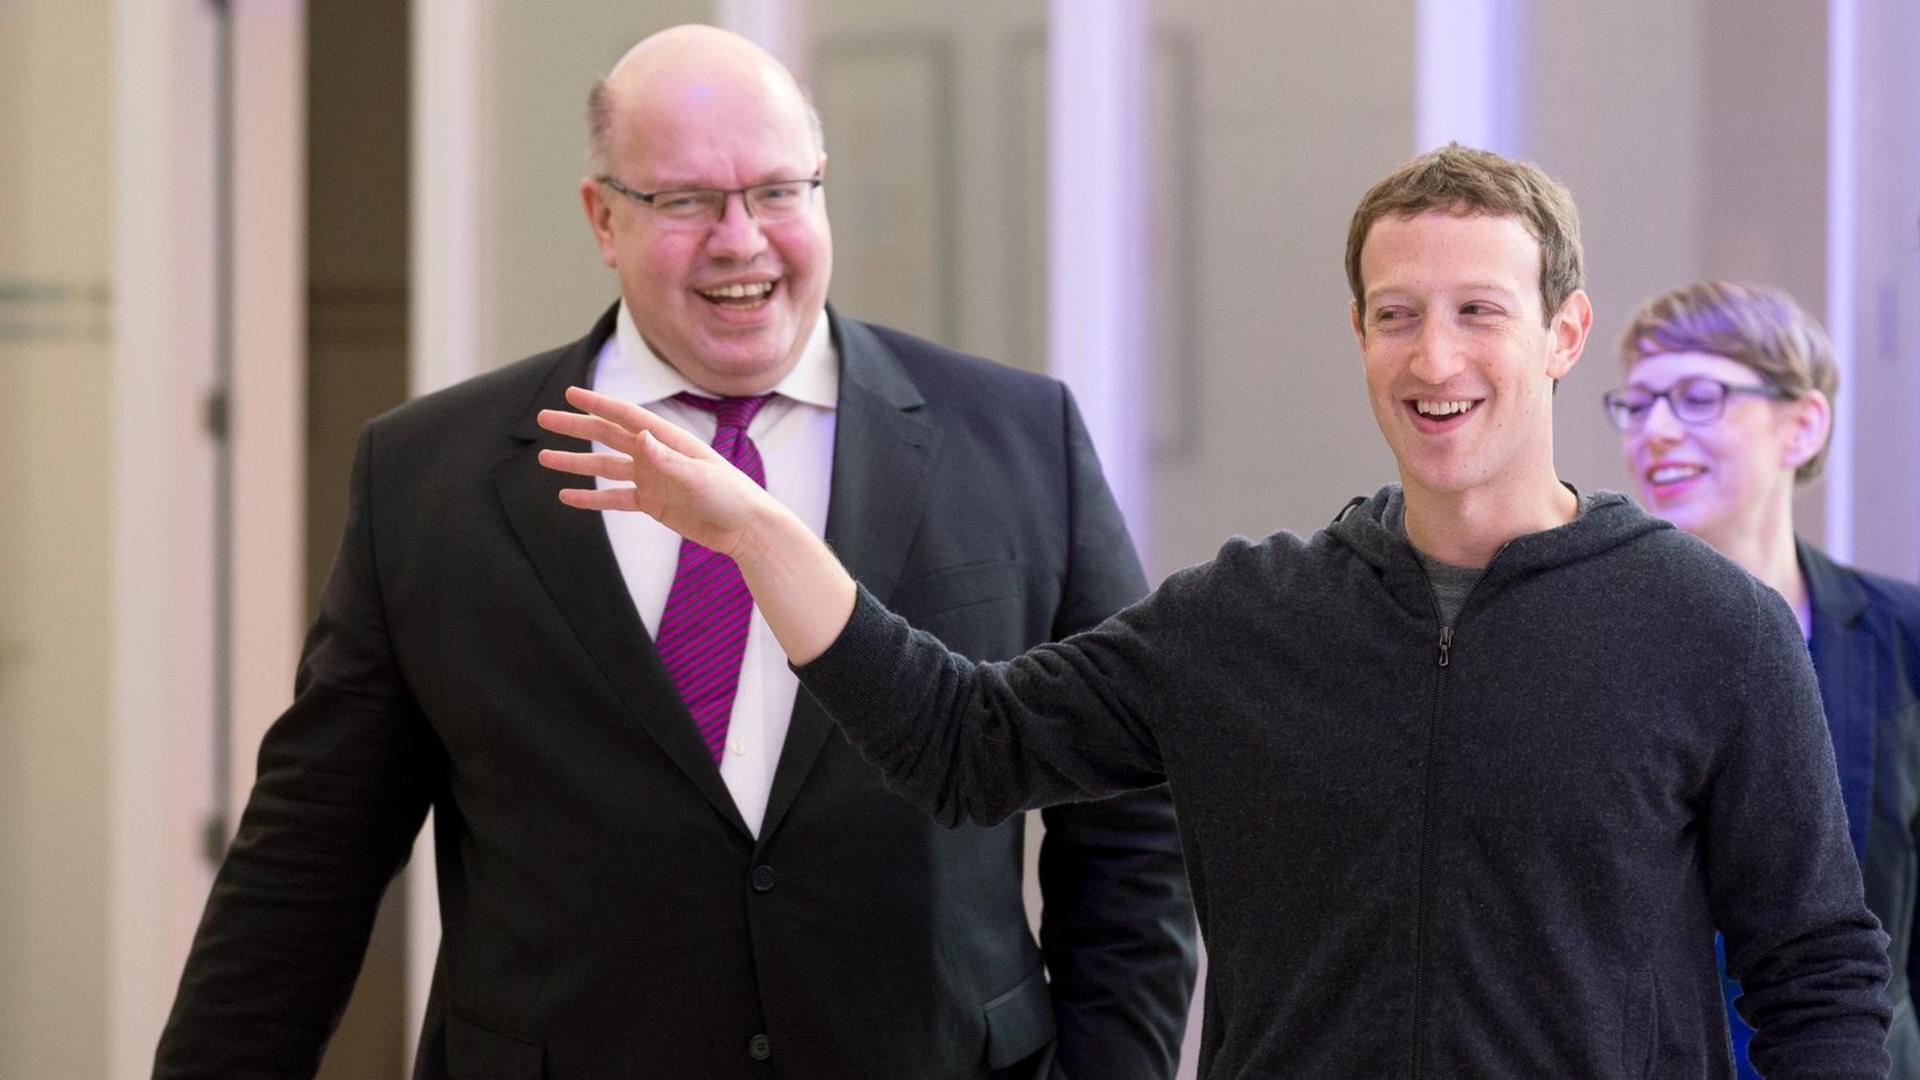 Kanzleramtsminister Peter Altmaier (l, CDU) und der Facebook-Chef Mark Zuckerberg (M.) unterhalten sich am 25.02.2016 in Berlin während der Facebook Innovation Hub. Zuckerberg hatte unter anderem Studien zur künstlichen Intelligenz vorgestellt. Foto: Kay Nietfeld/dpa